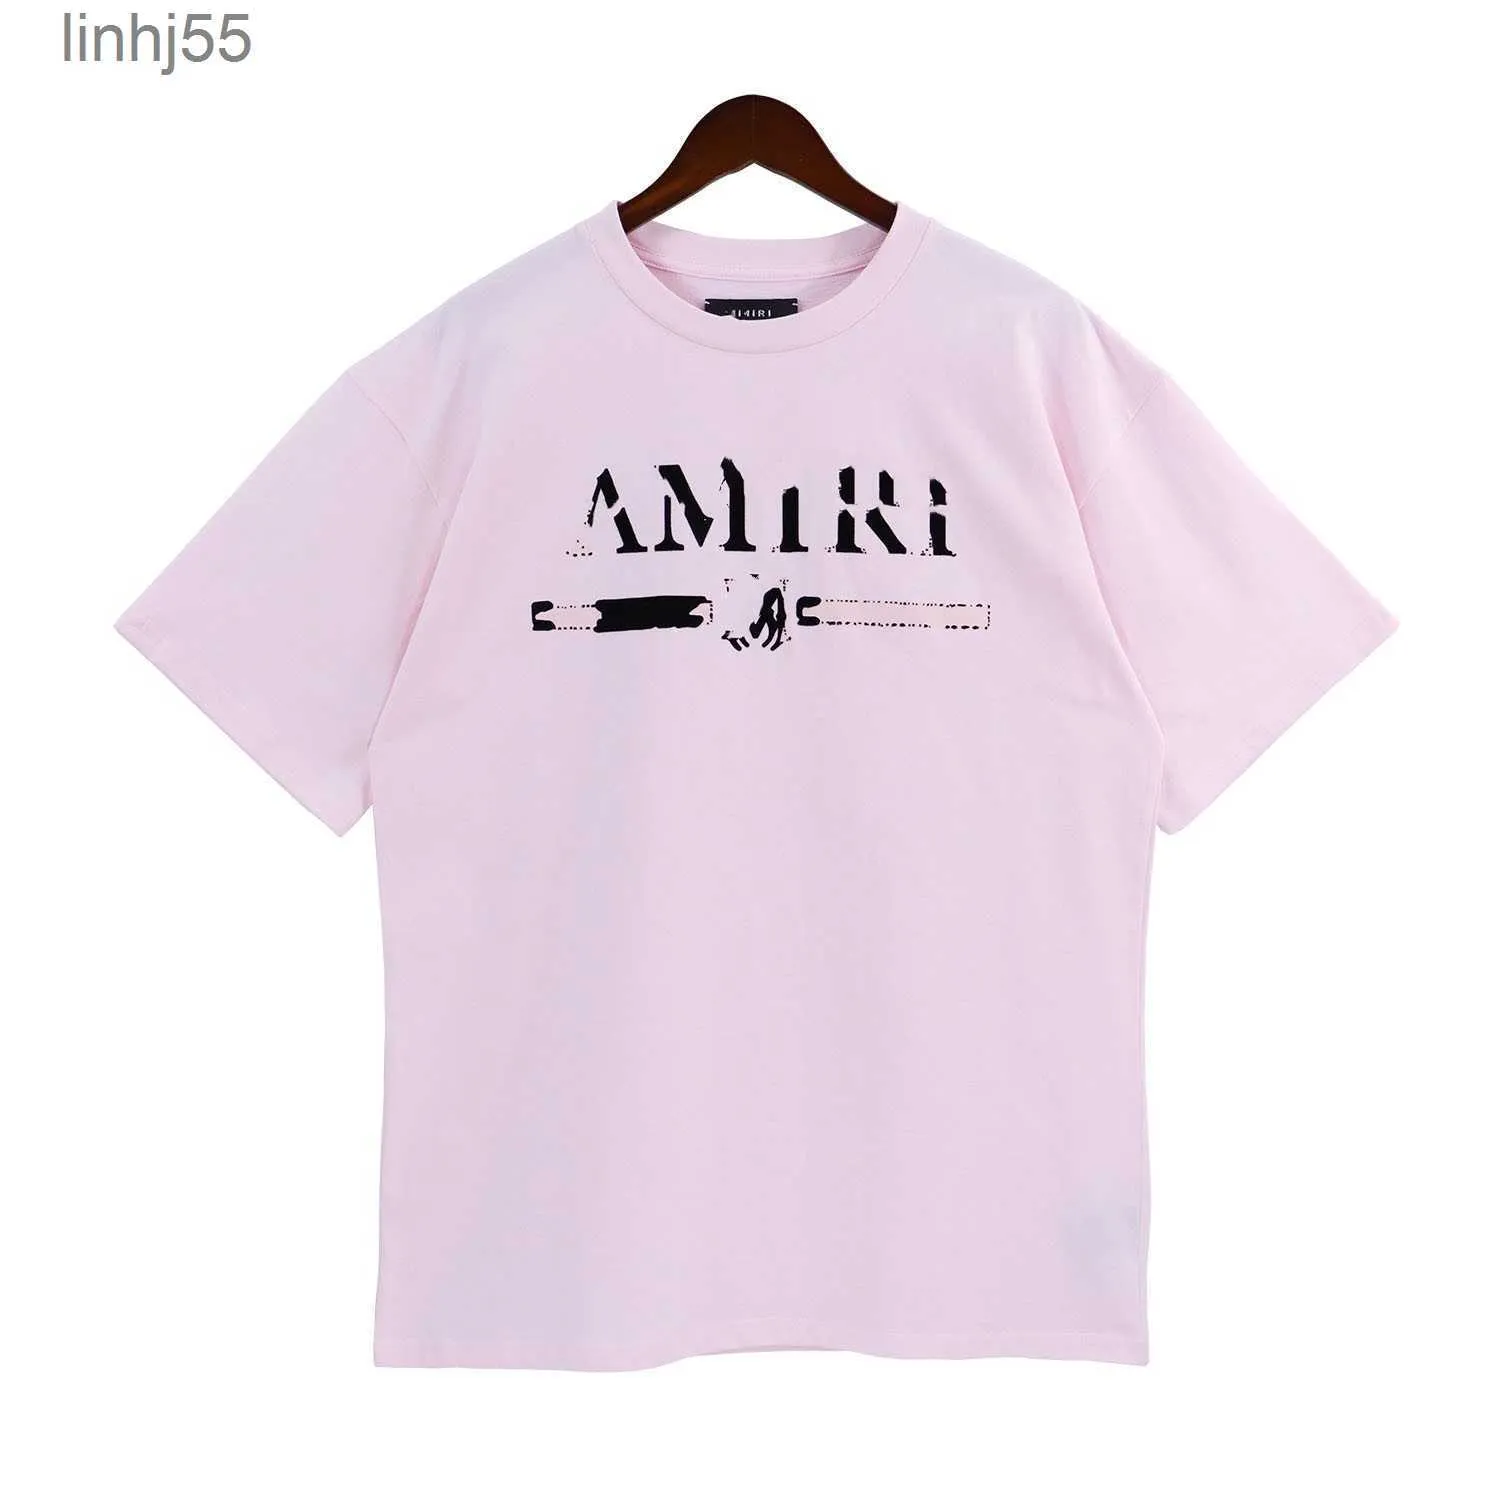 T-shirts pour hommes Homme Amari Amirl Amirlies Am Amis Imiri Amiiri 22ss Chemise Designer pour hommes Chemises T-shirt de mode avec des lettres Casual Summer Short Sleeve tAVG3